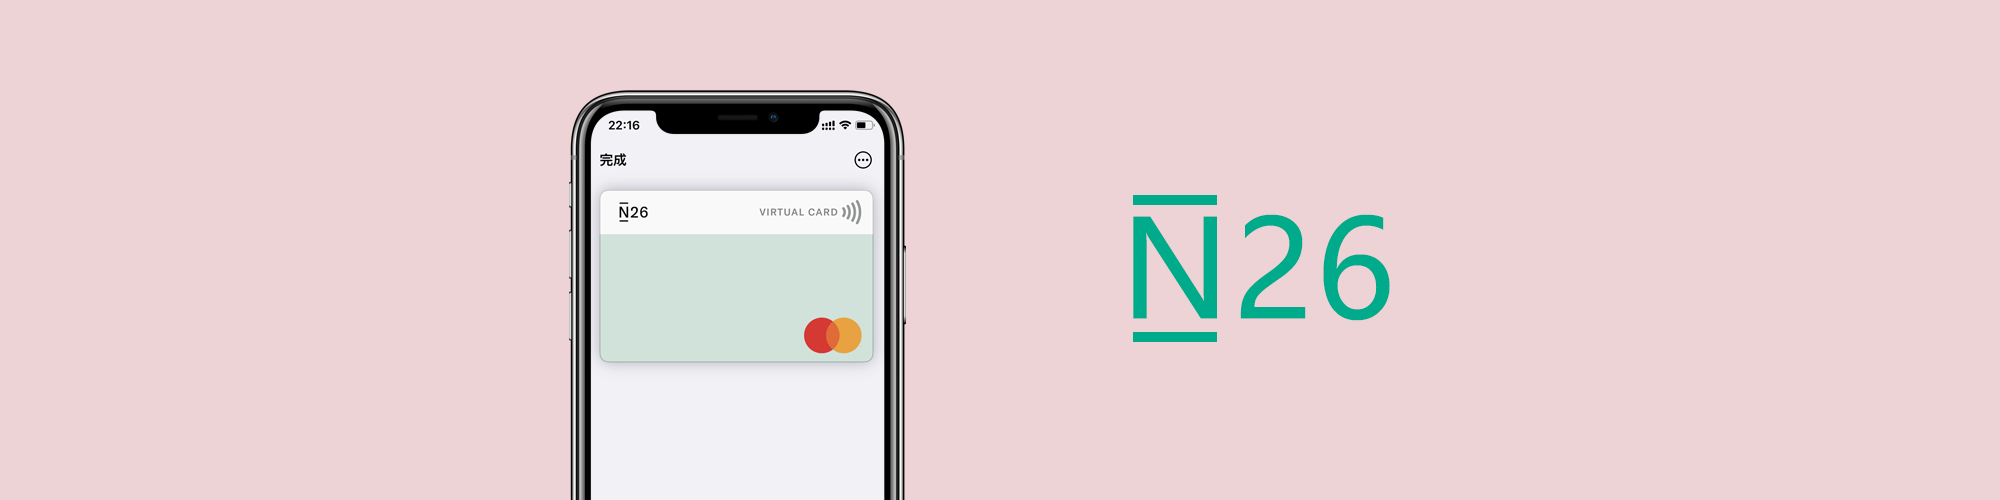 德国数字银行N26开户教程,提供虚拟卡和实体卡,支持Apple Pay,支付宝,微信